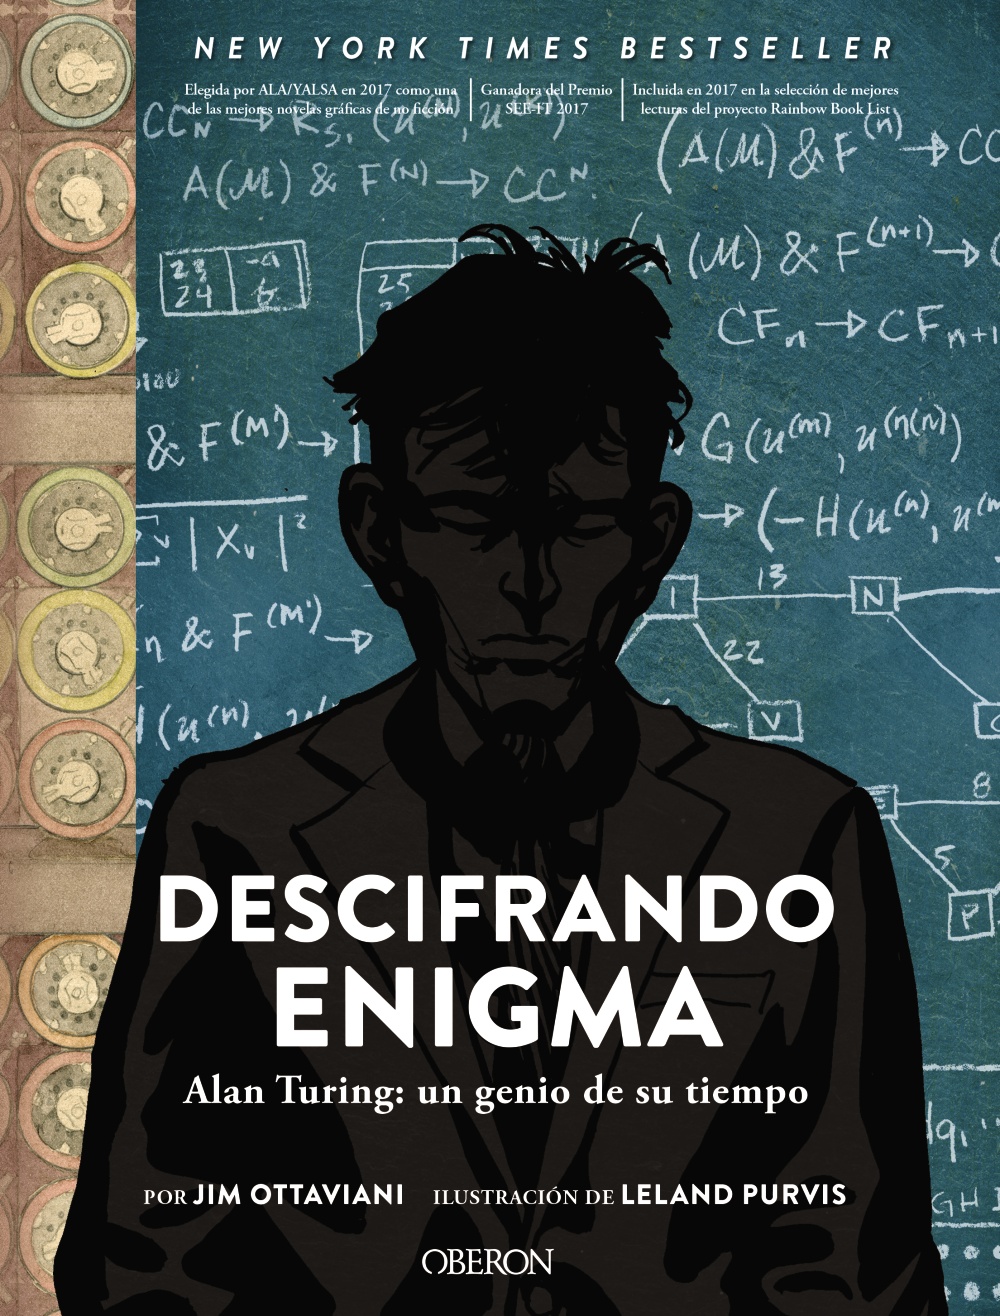 Descifrando enigma "Alan Turing: un genio de su tiempo"